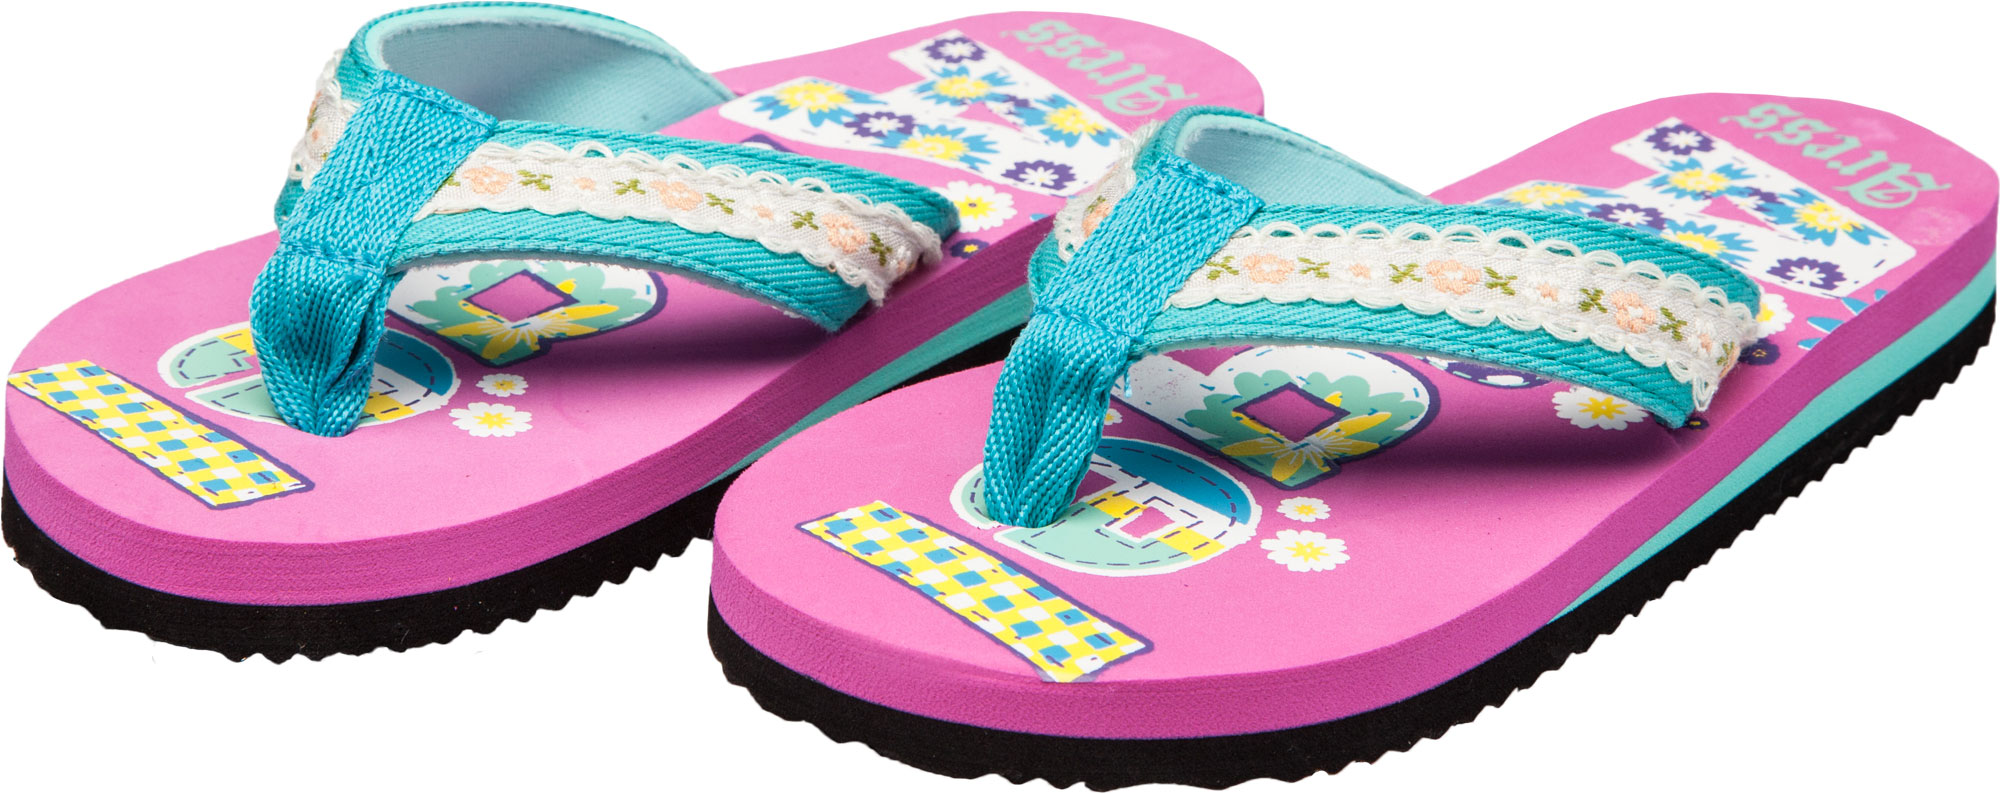 Kids’ flip-flops